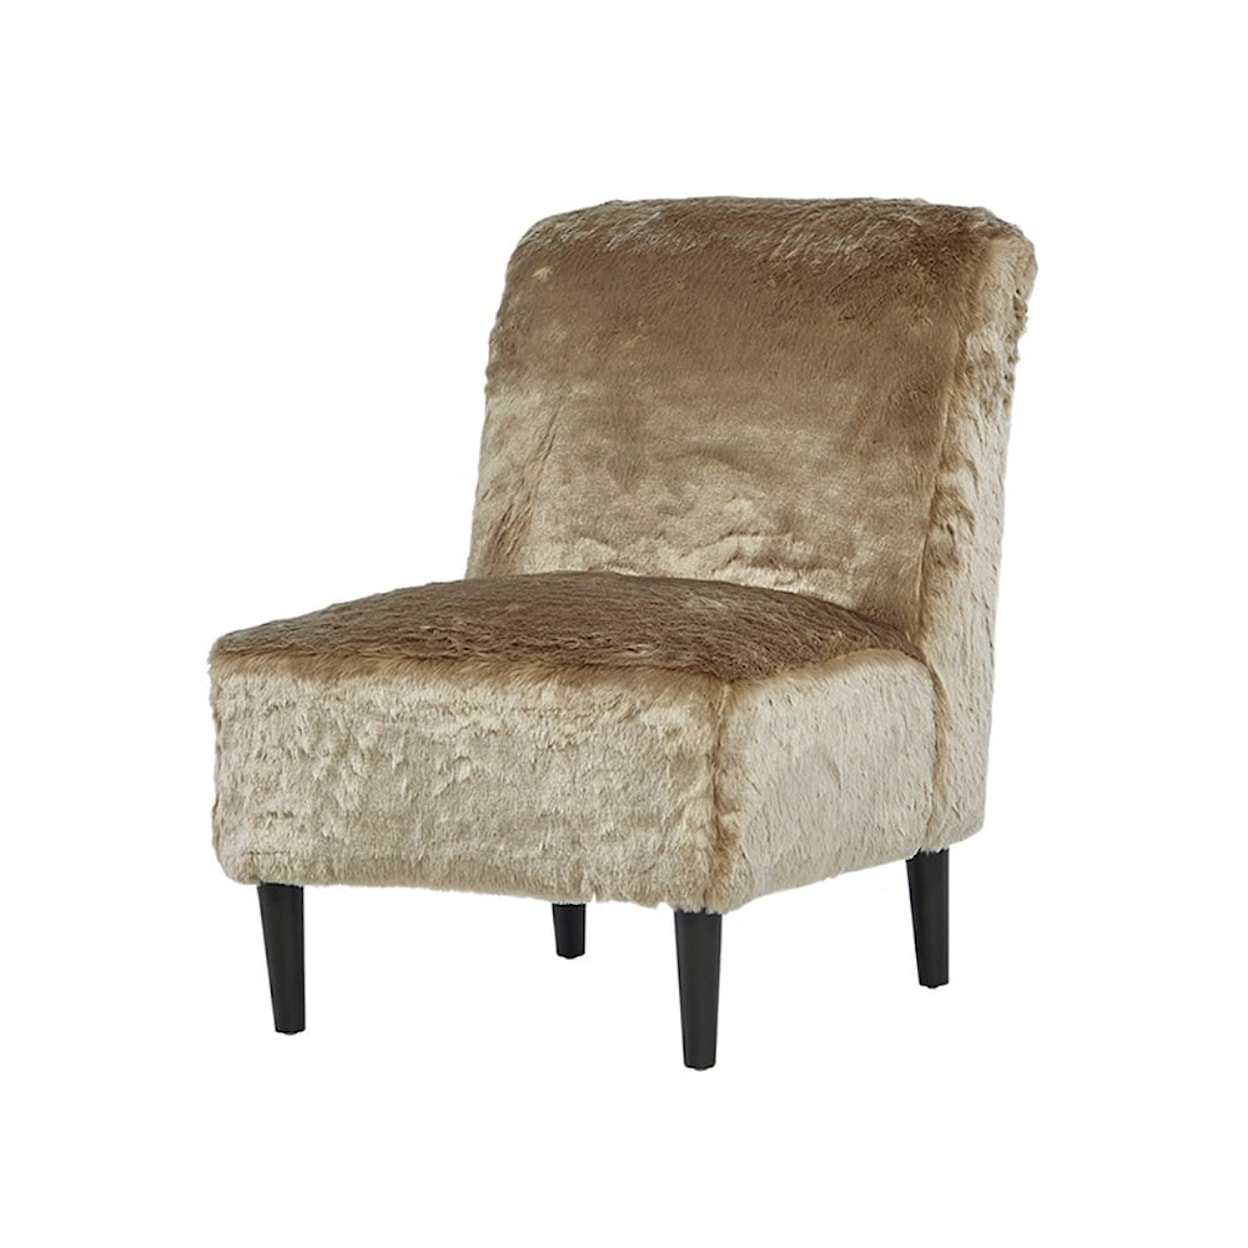 Hughes Furniture 1550 Armless Chair